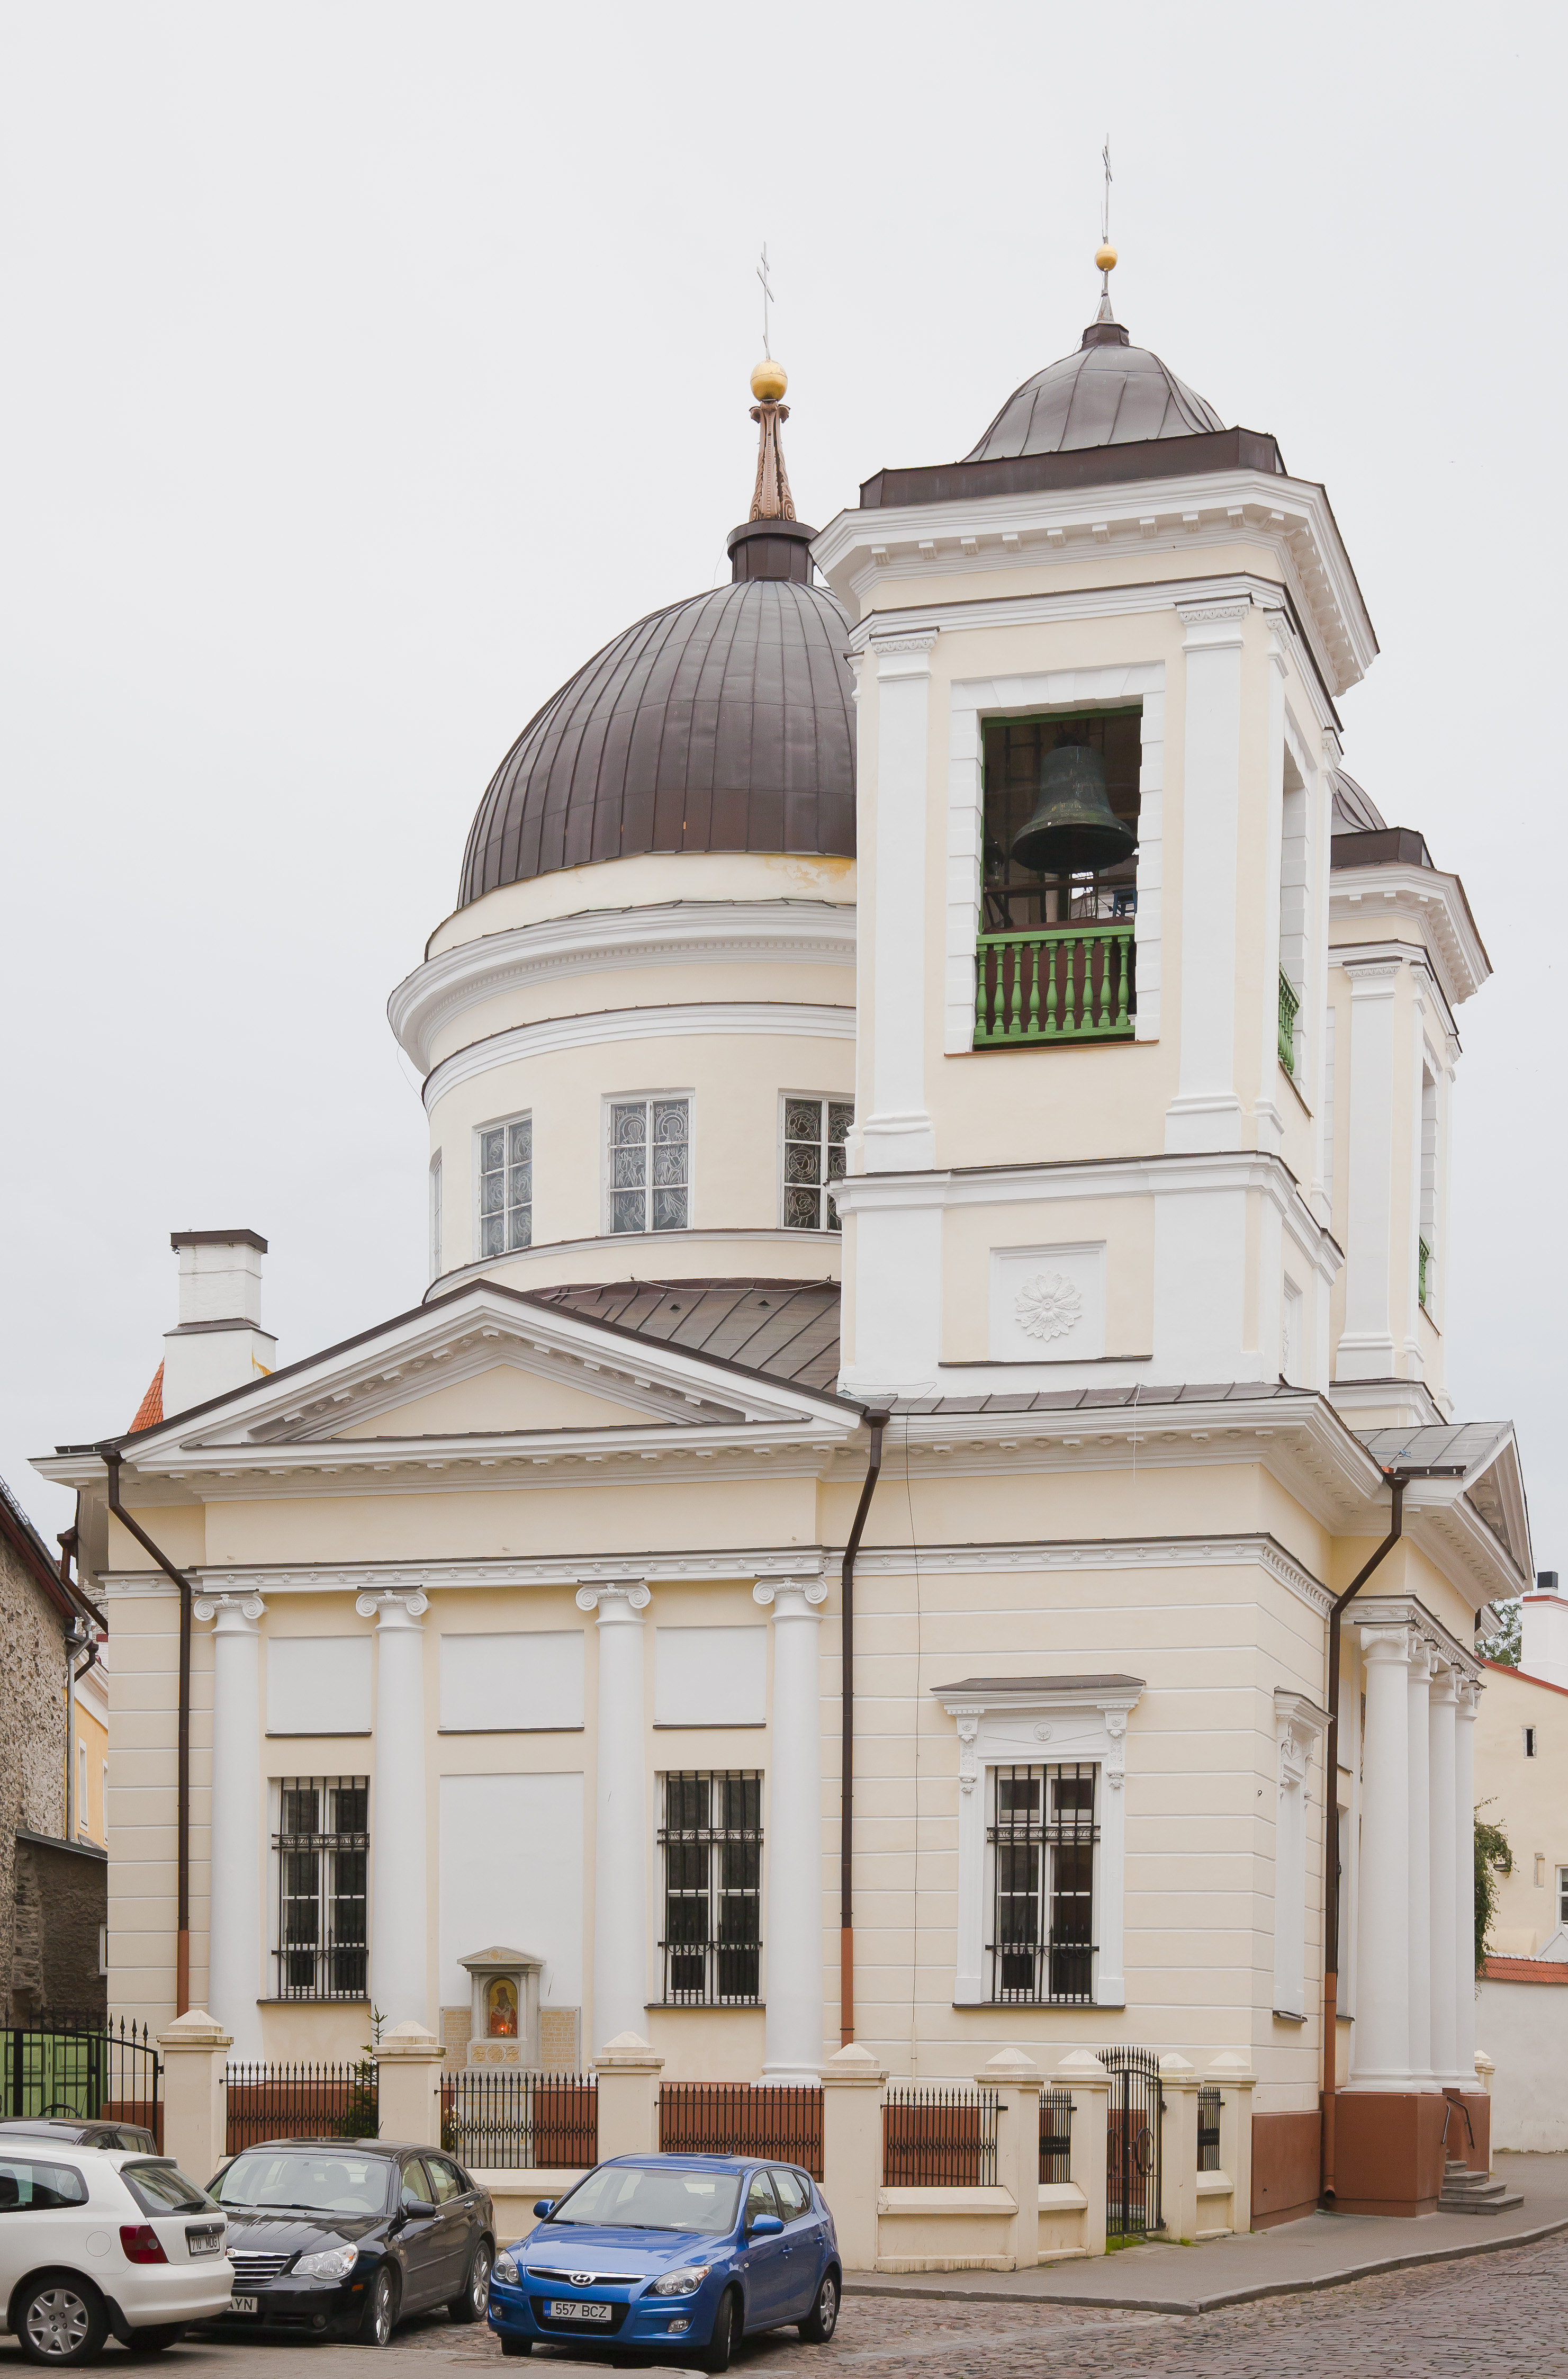 Iglesia ortodoxa de San Nicolás, Tallin, Estonia, 2012-08-05, DD 02